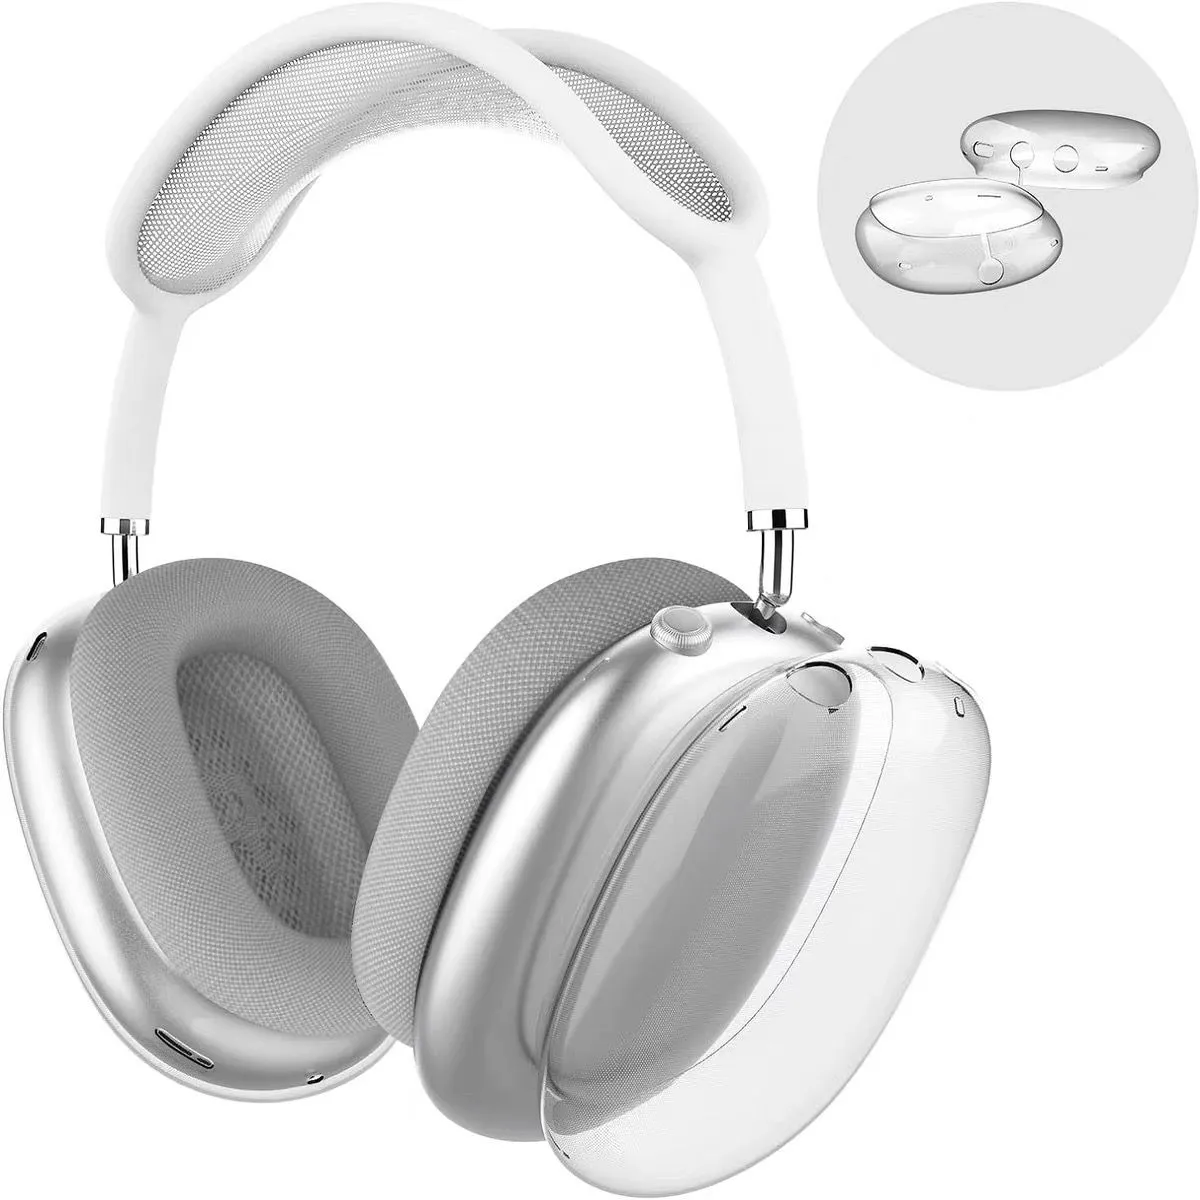 Para Airpods Max Air pods Maxs fones de ouvido fones de ouvido max Almofadas Acessórios Silicone sólido Alto personalizado à prova d'água Protetor de plástico Estojo de viagem para fone de ouvido